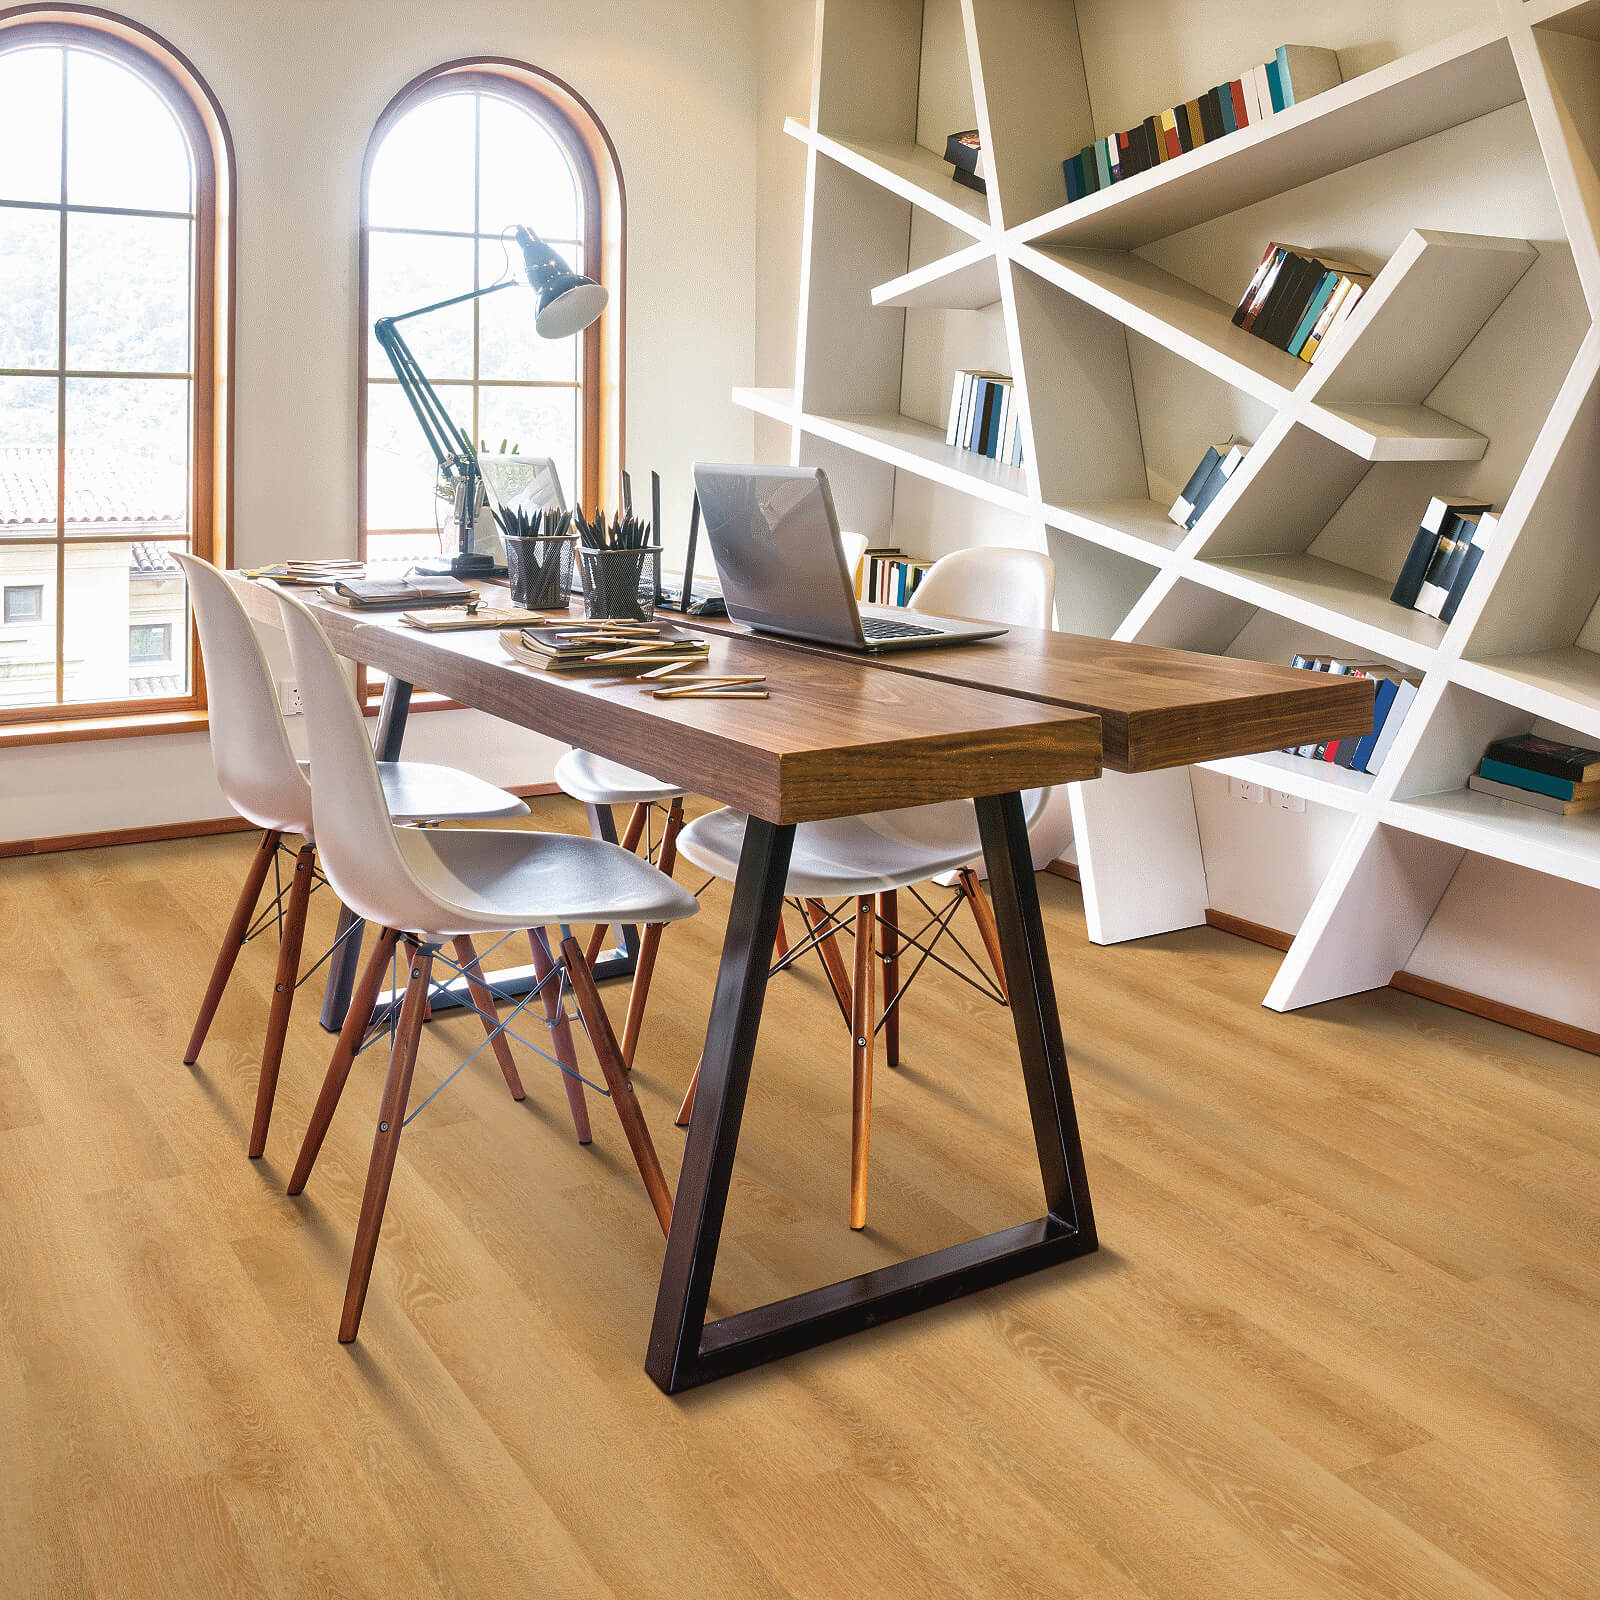 Vinyl flooring for study room | Tom's Carpet & Flooring Outlet